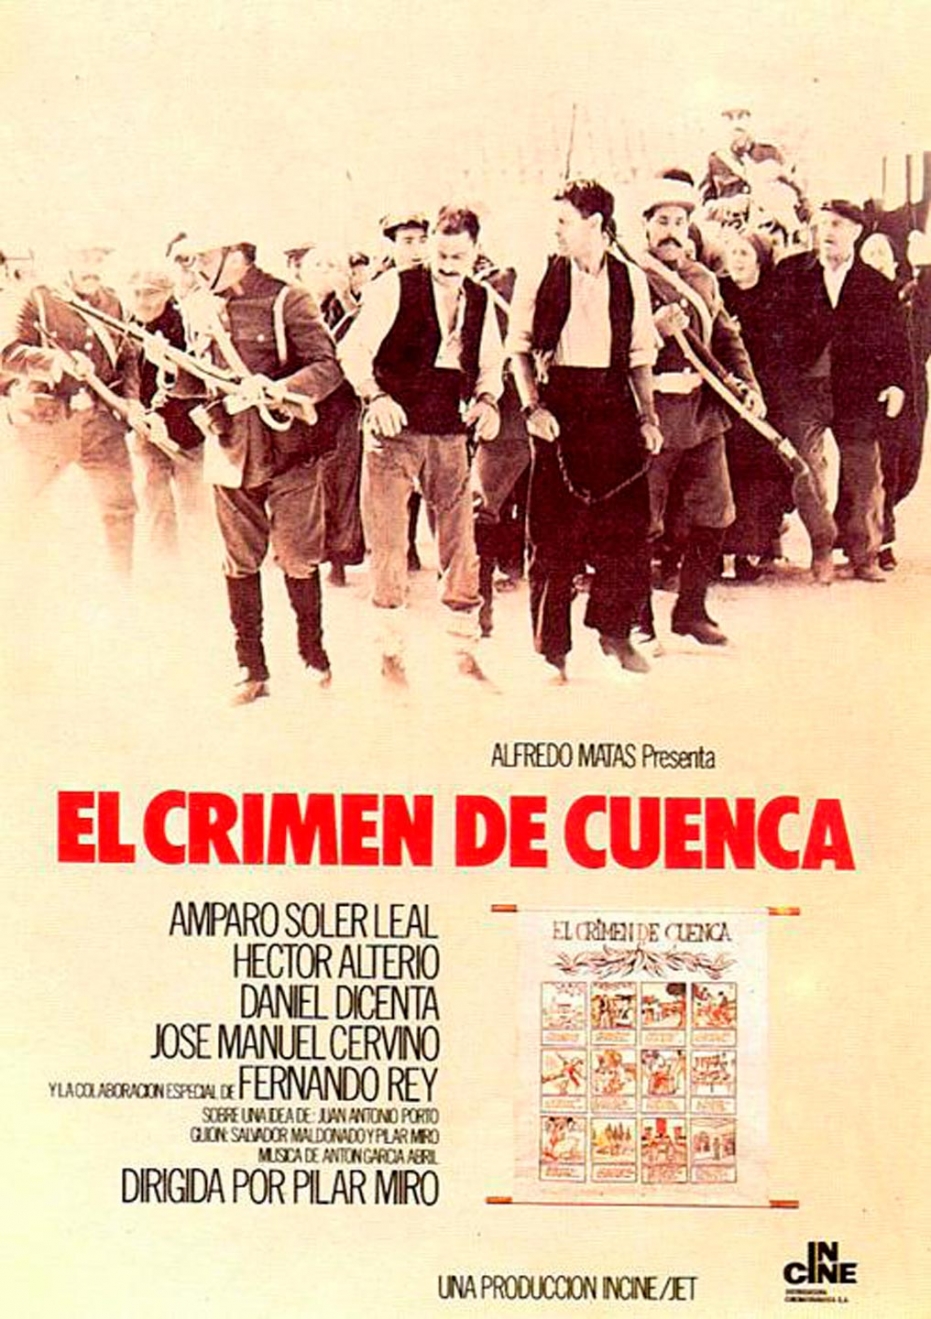 Homenaje a la figura y obra de Pilar Miró: proyección de El crimen de Cuenca en colaboración con Filmoteca Española. Coloquio posterior